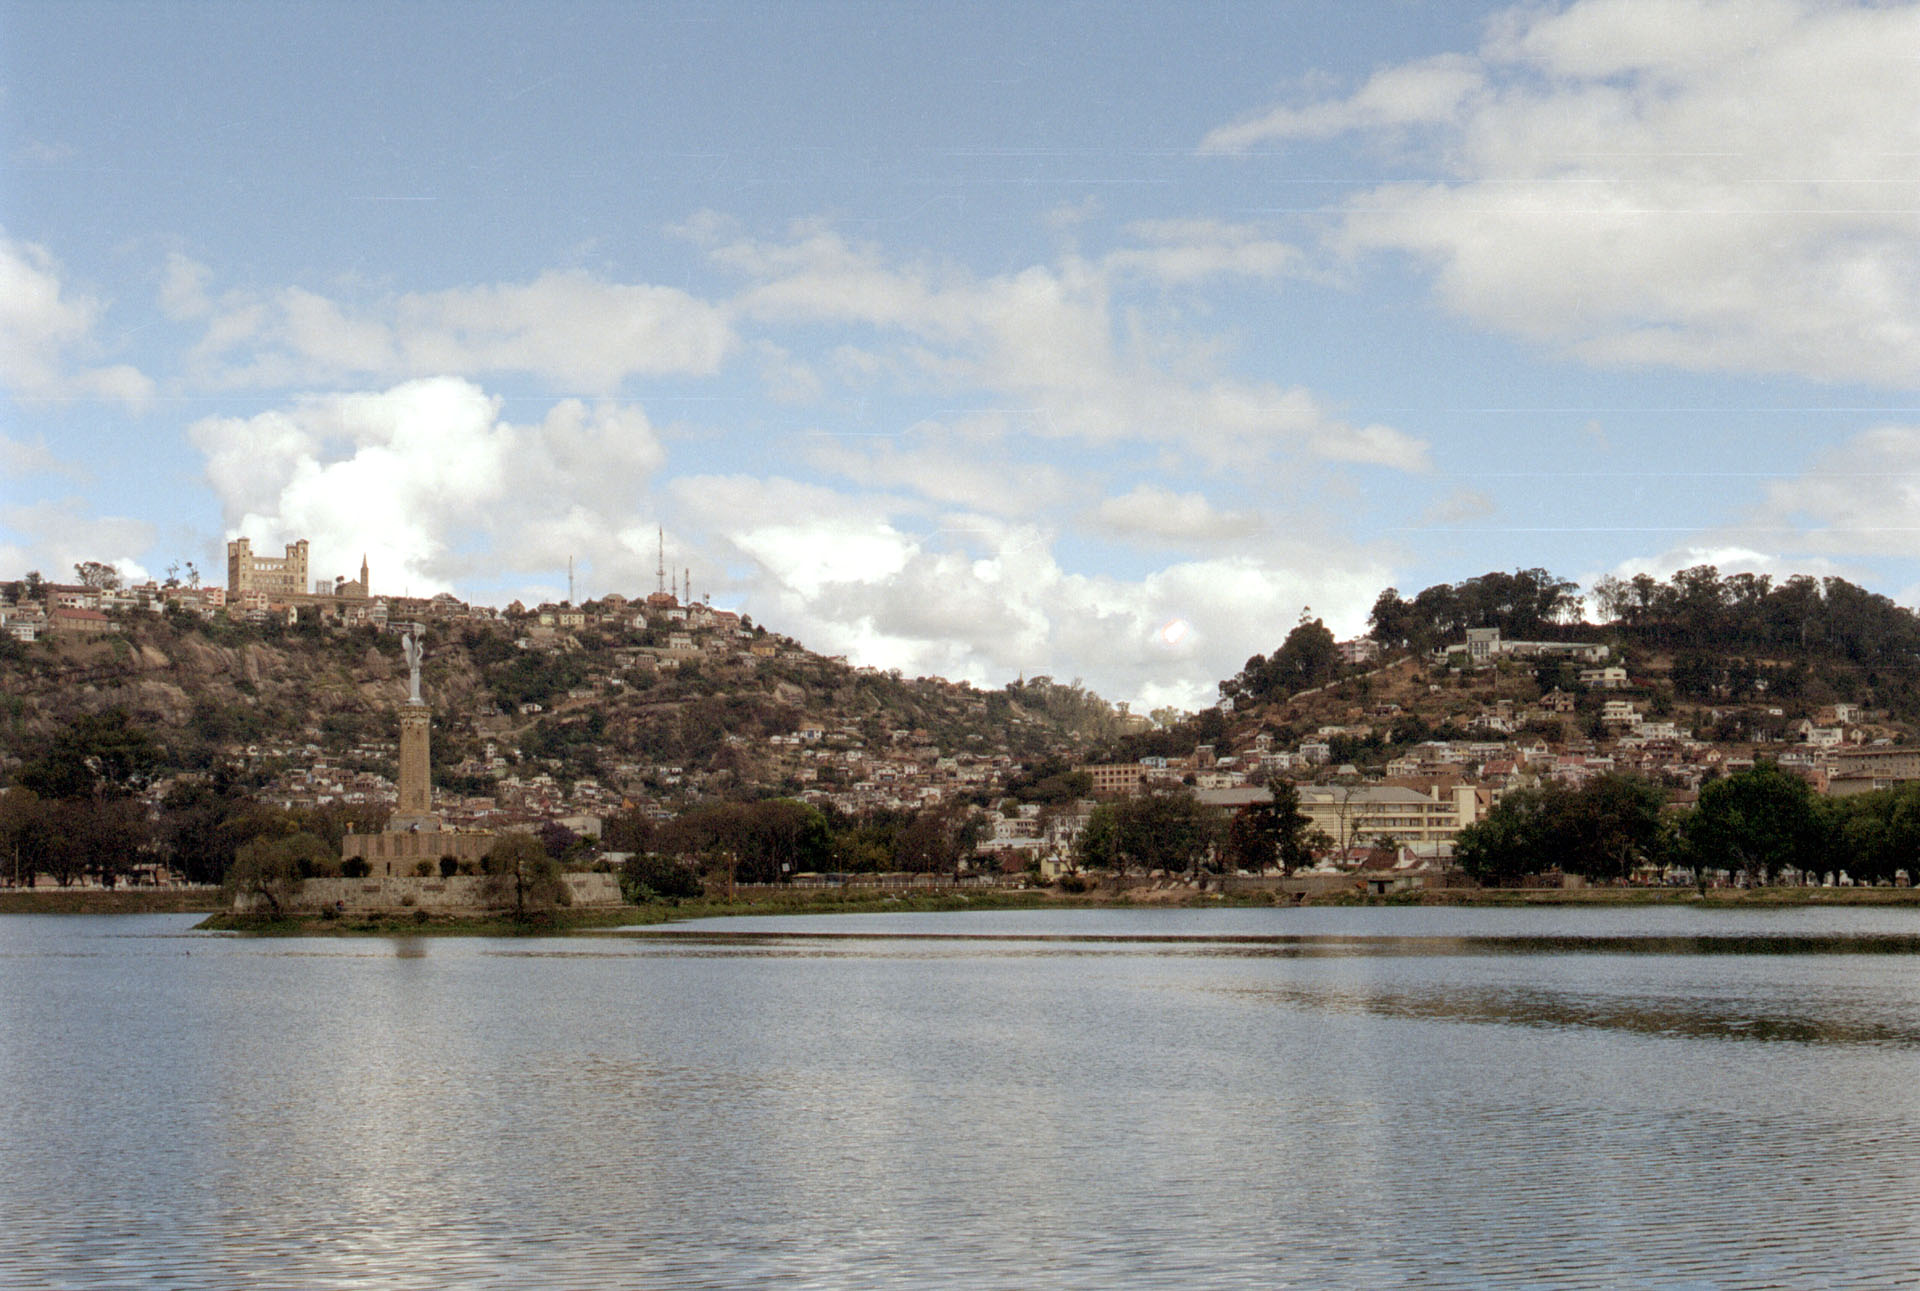 Antananarivo - Madagascar